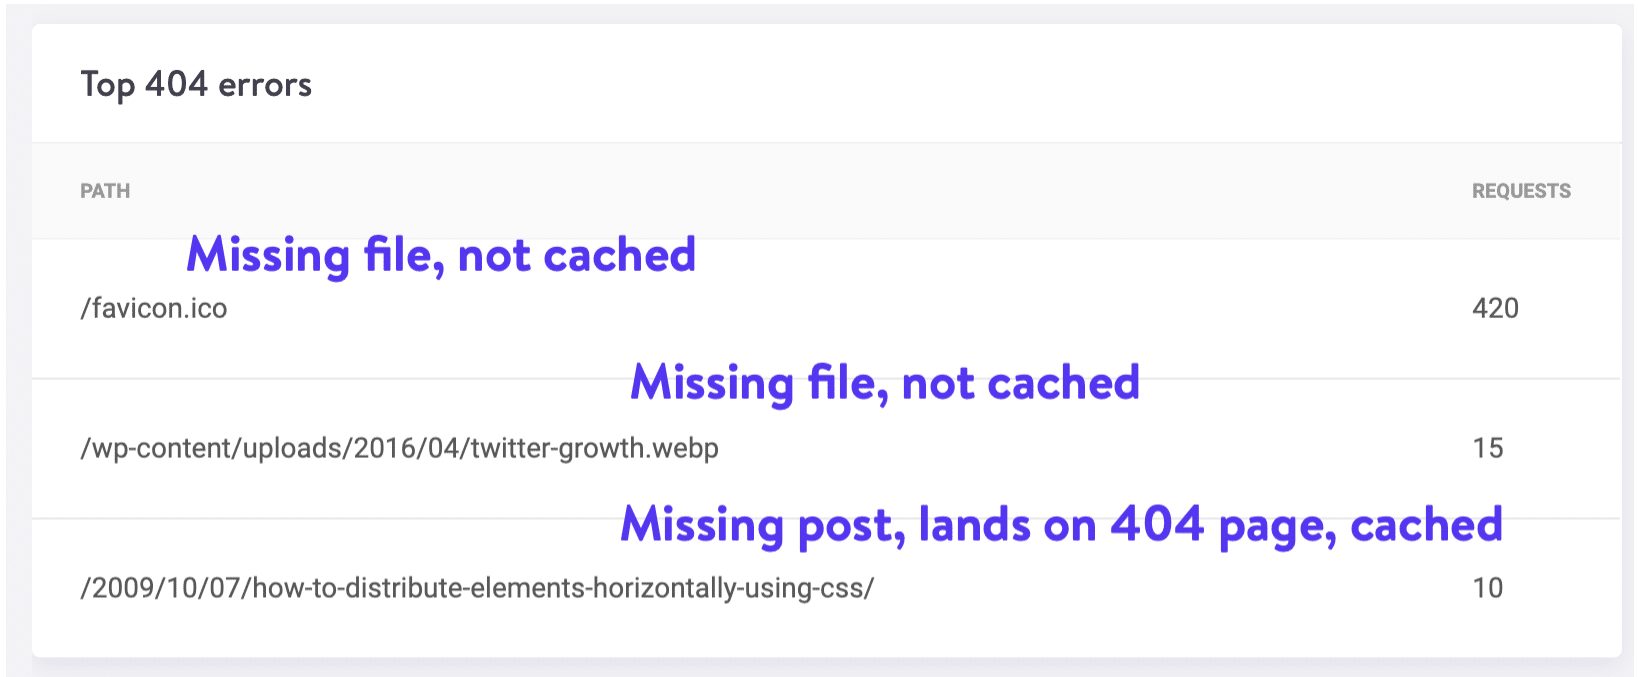 Pagina di richiesta 404 messa in cache